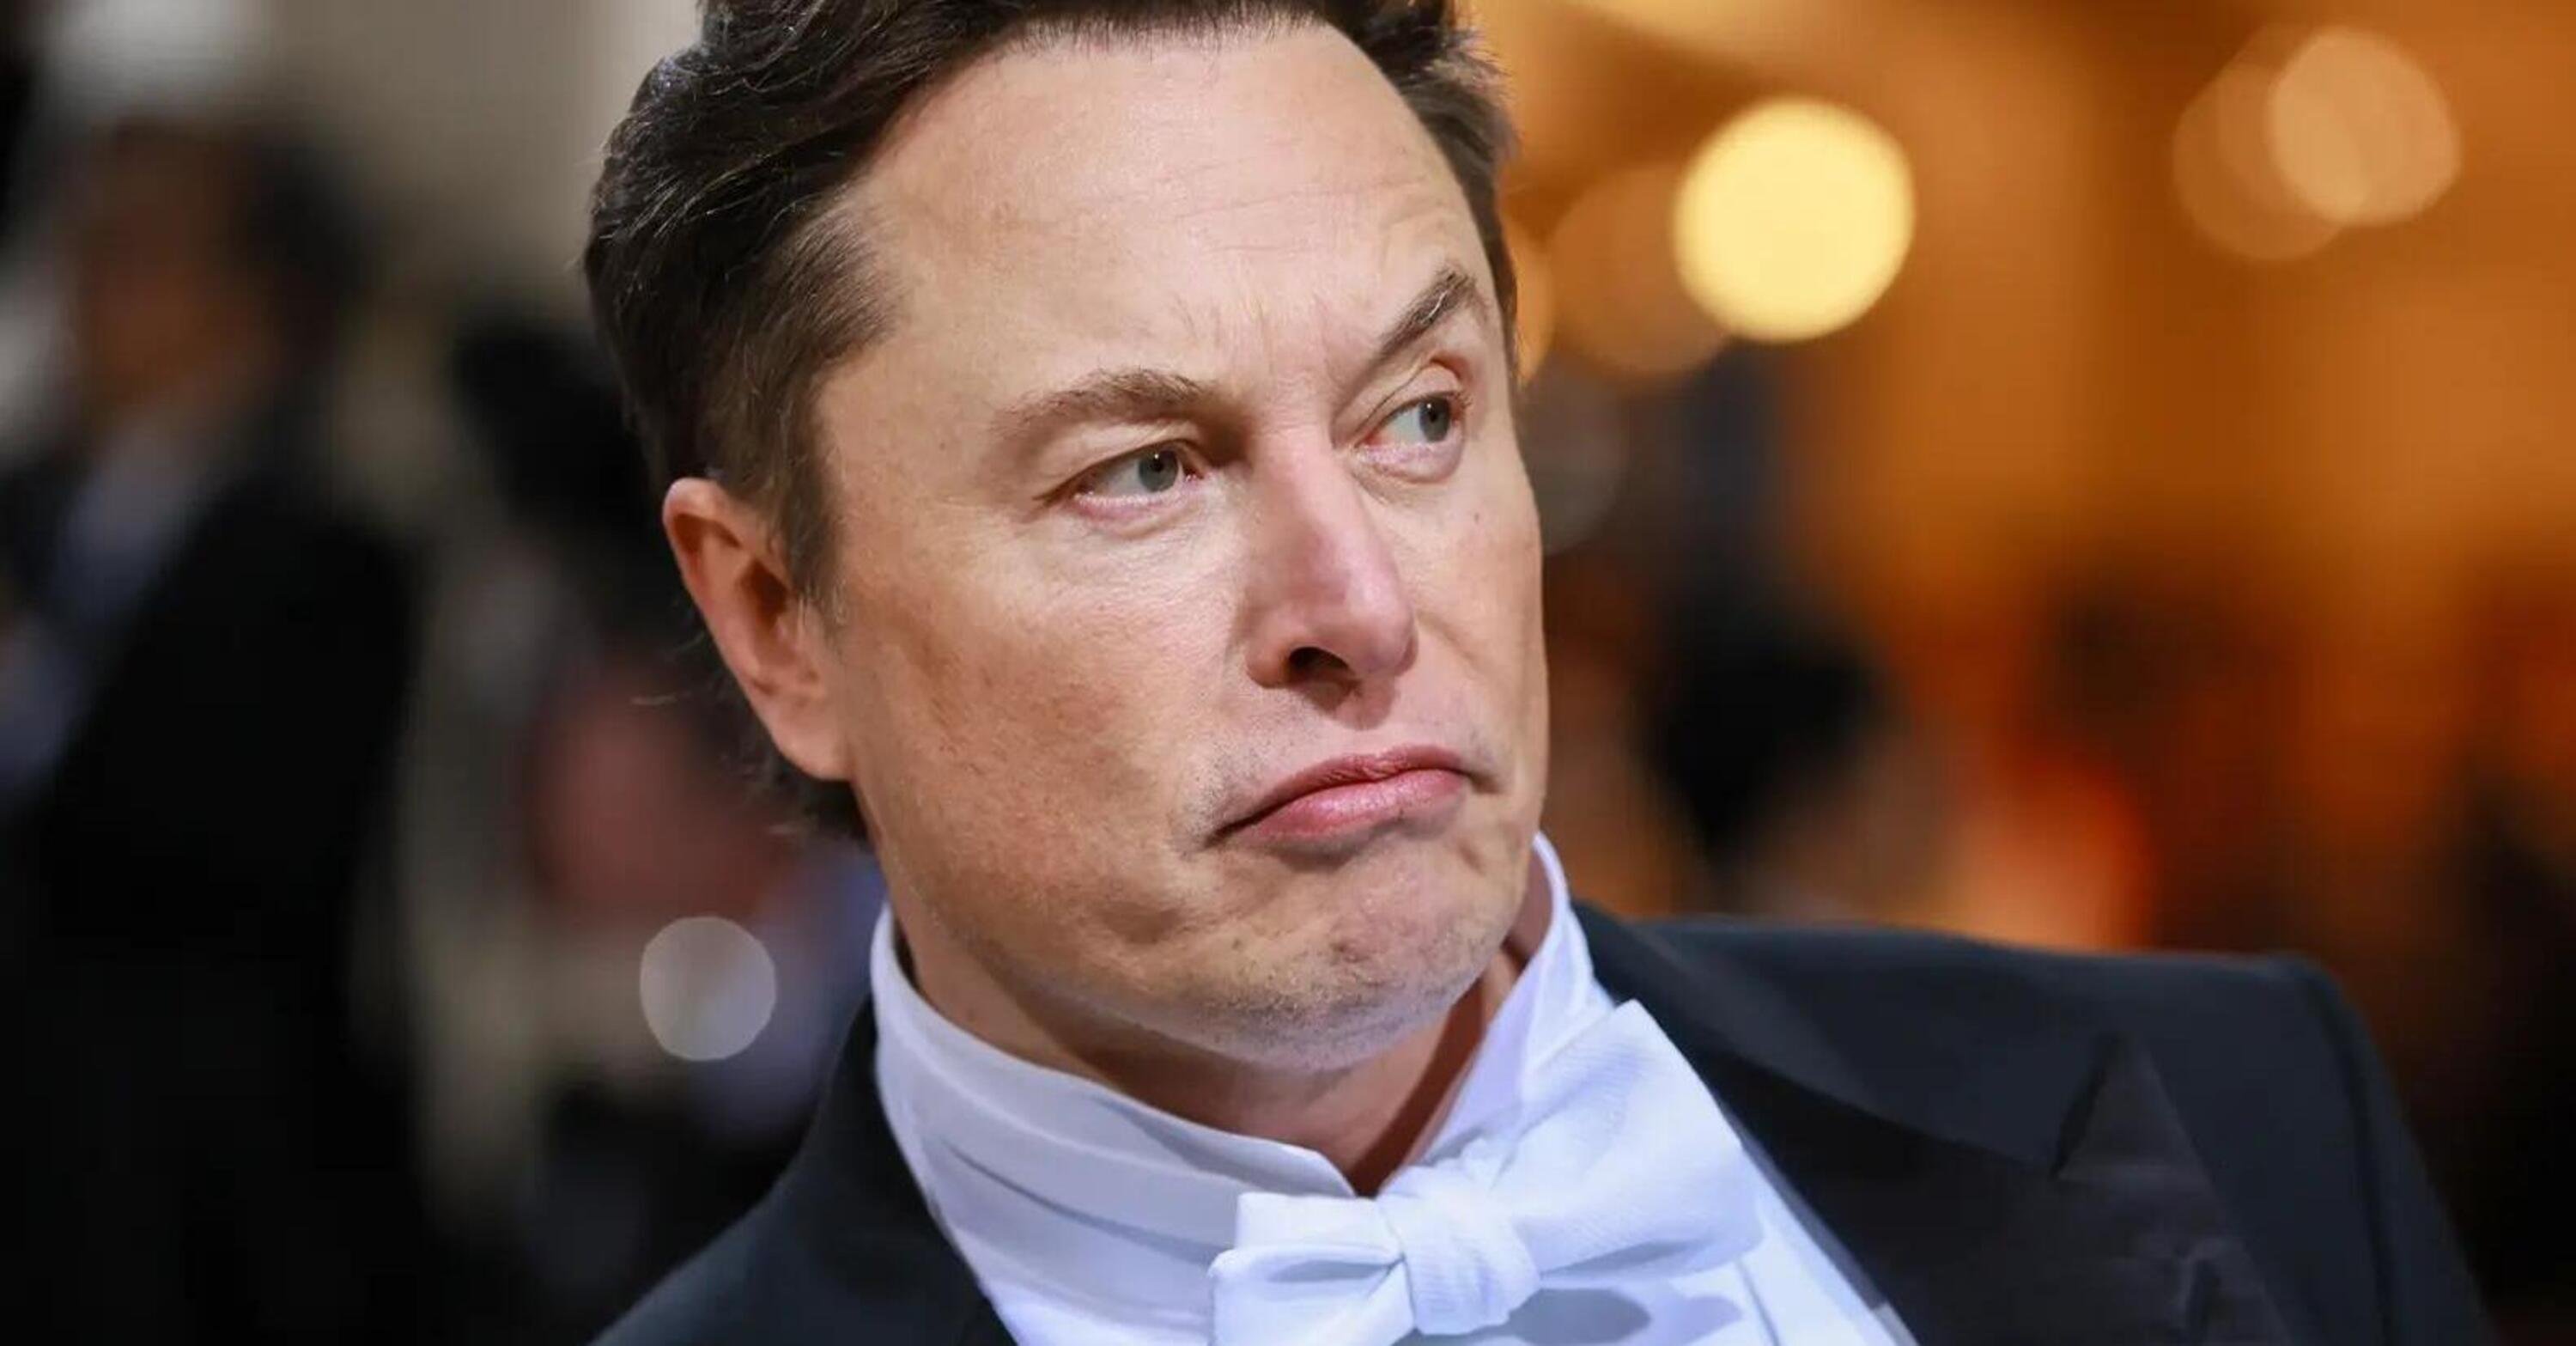 Elon Musk: i carmaker cinesi senza barriere demoliranno tutti e tutto